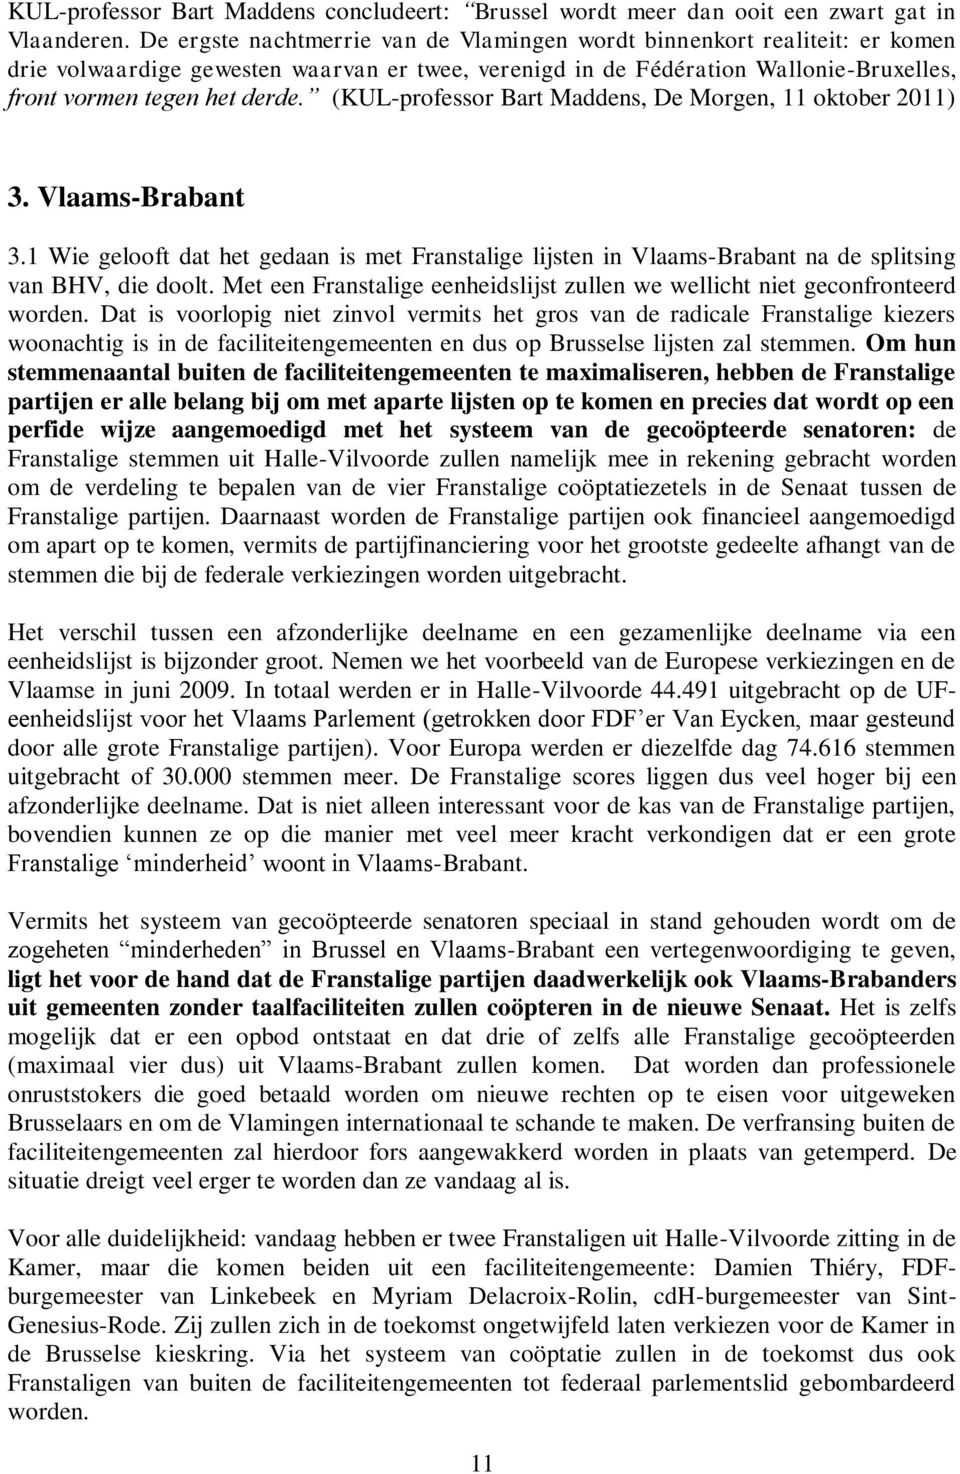 (KUL-professor Bart Maddens, De Morgen, 11 oktober 2011) 3. Vlaams-Brabant 3.1 Wie gelooft dat het gedaan is met Franstalige lijsten in Vlaams-Brabant na de splitsing van BHV, die doolt.